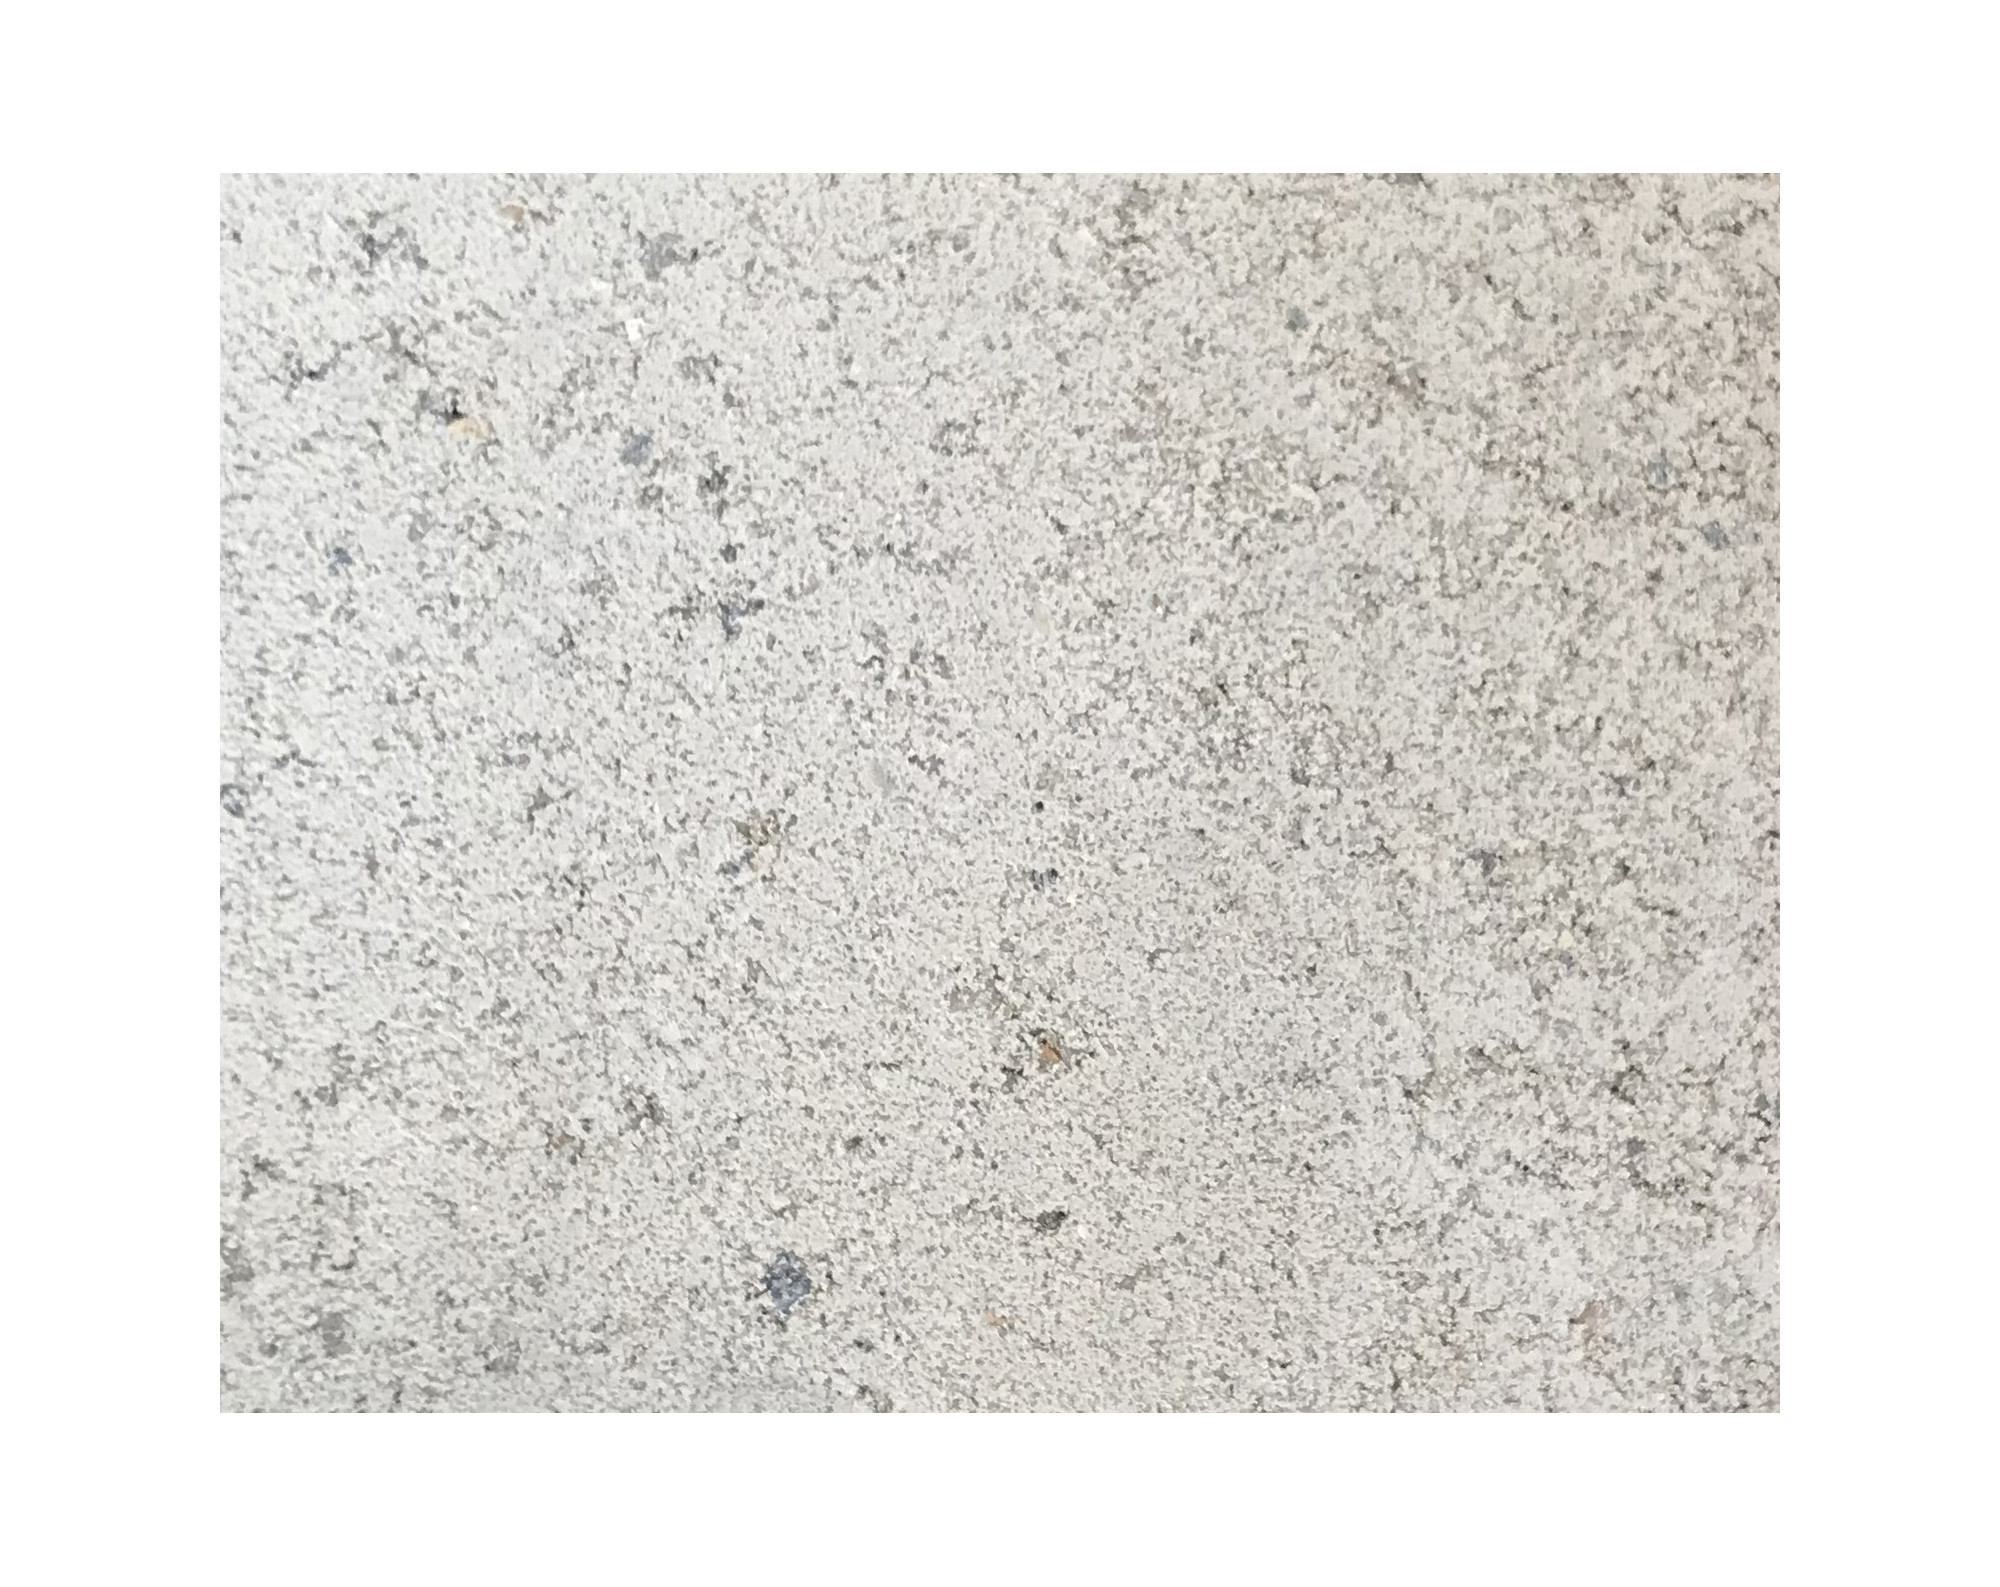 Harmo roc nevadaset, rustica-serie, 8-vormig d:4,60mx7,25m, gebroken wit, beton